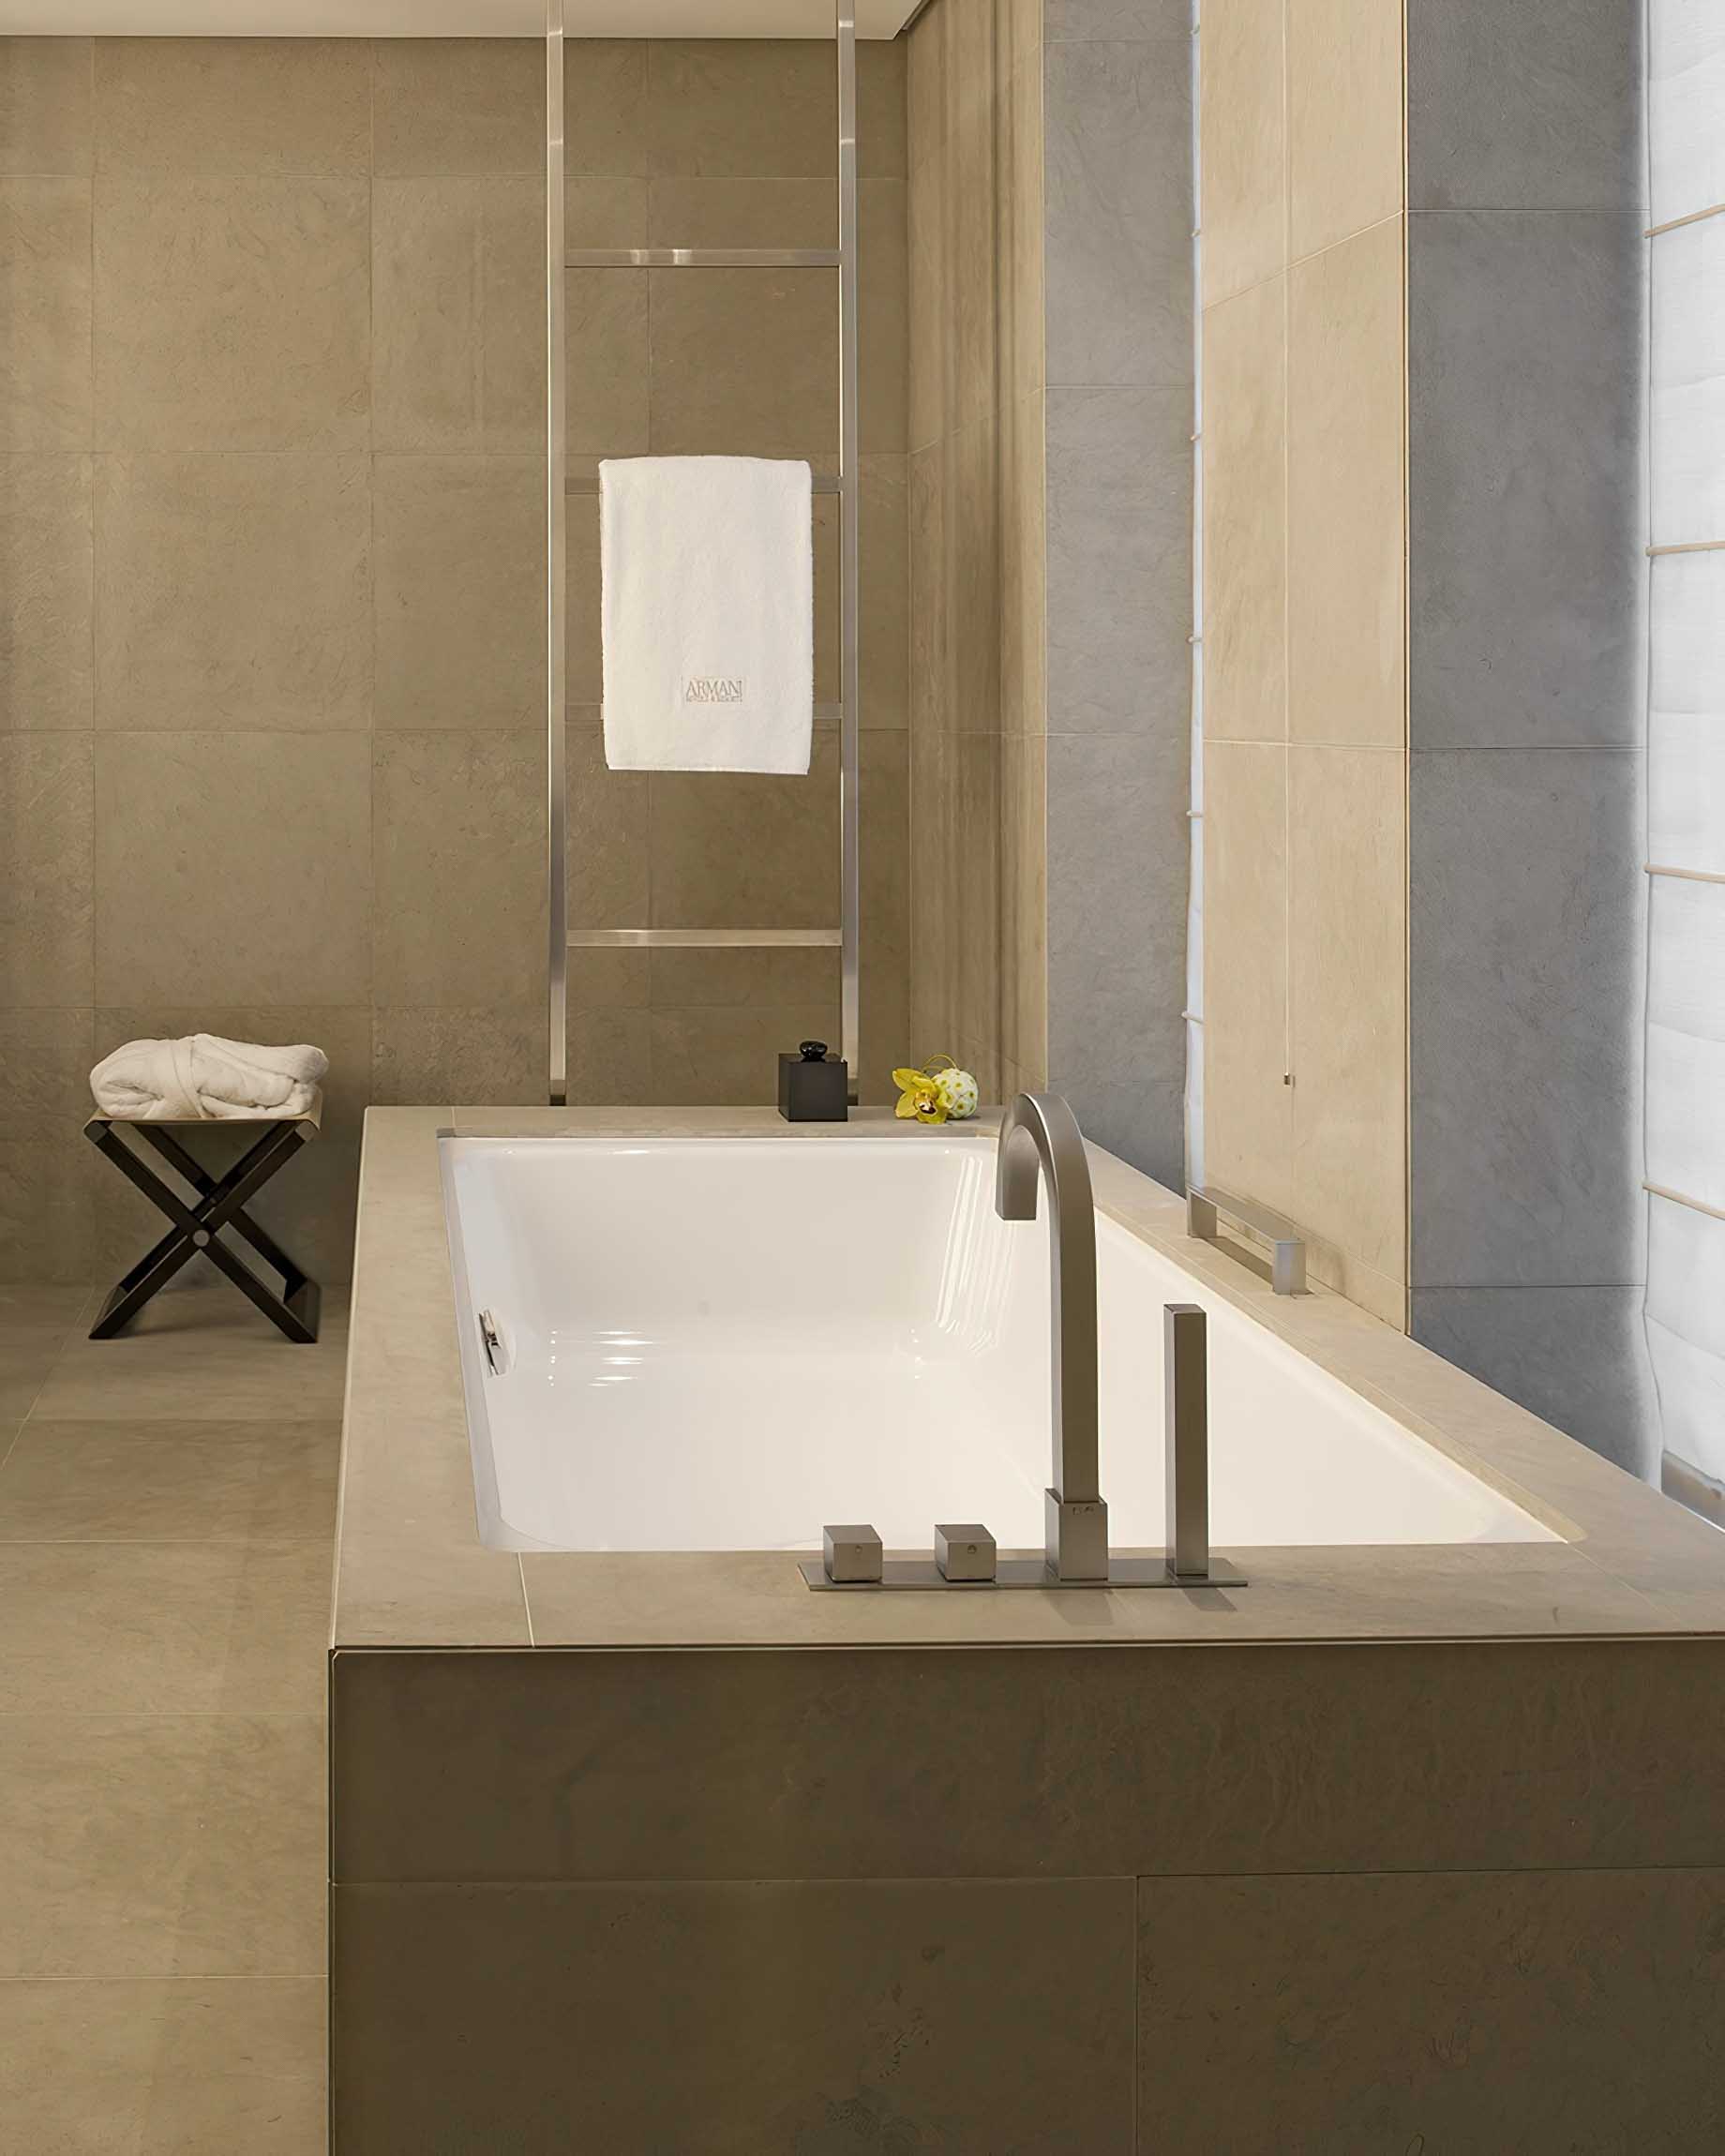 037 – Armani Hotel Milano – Milan, Italy – Armani Suite Bathroom Tub